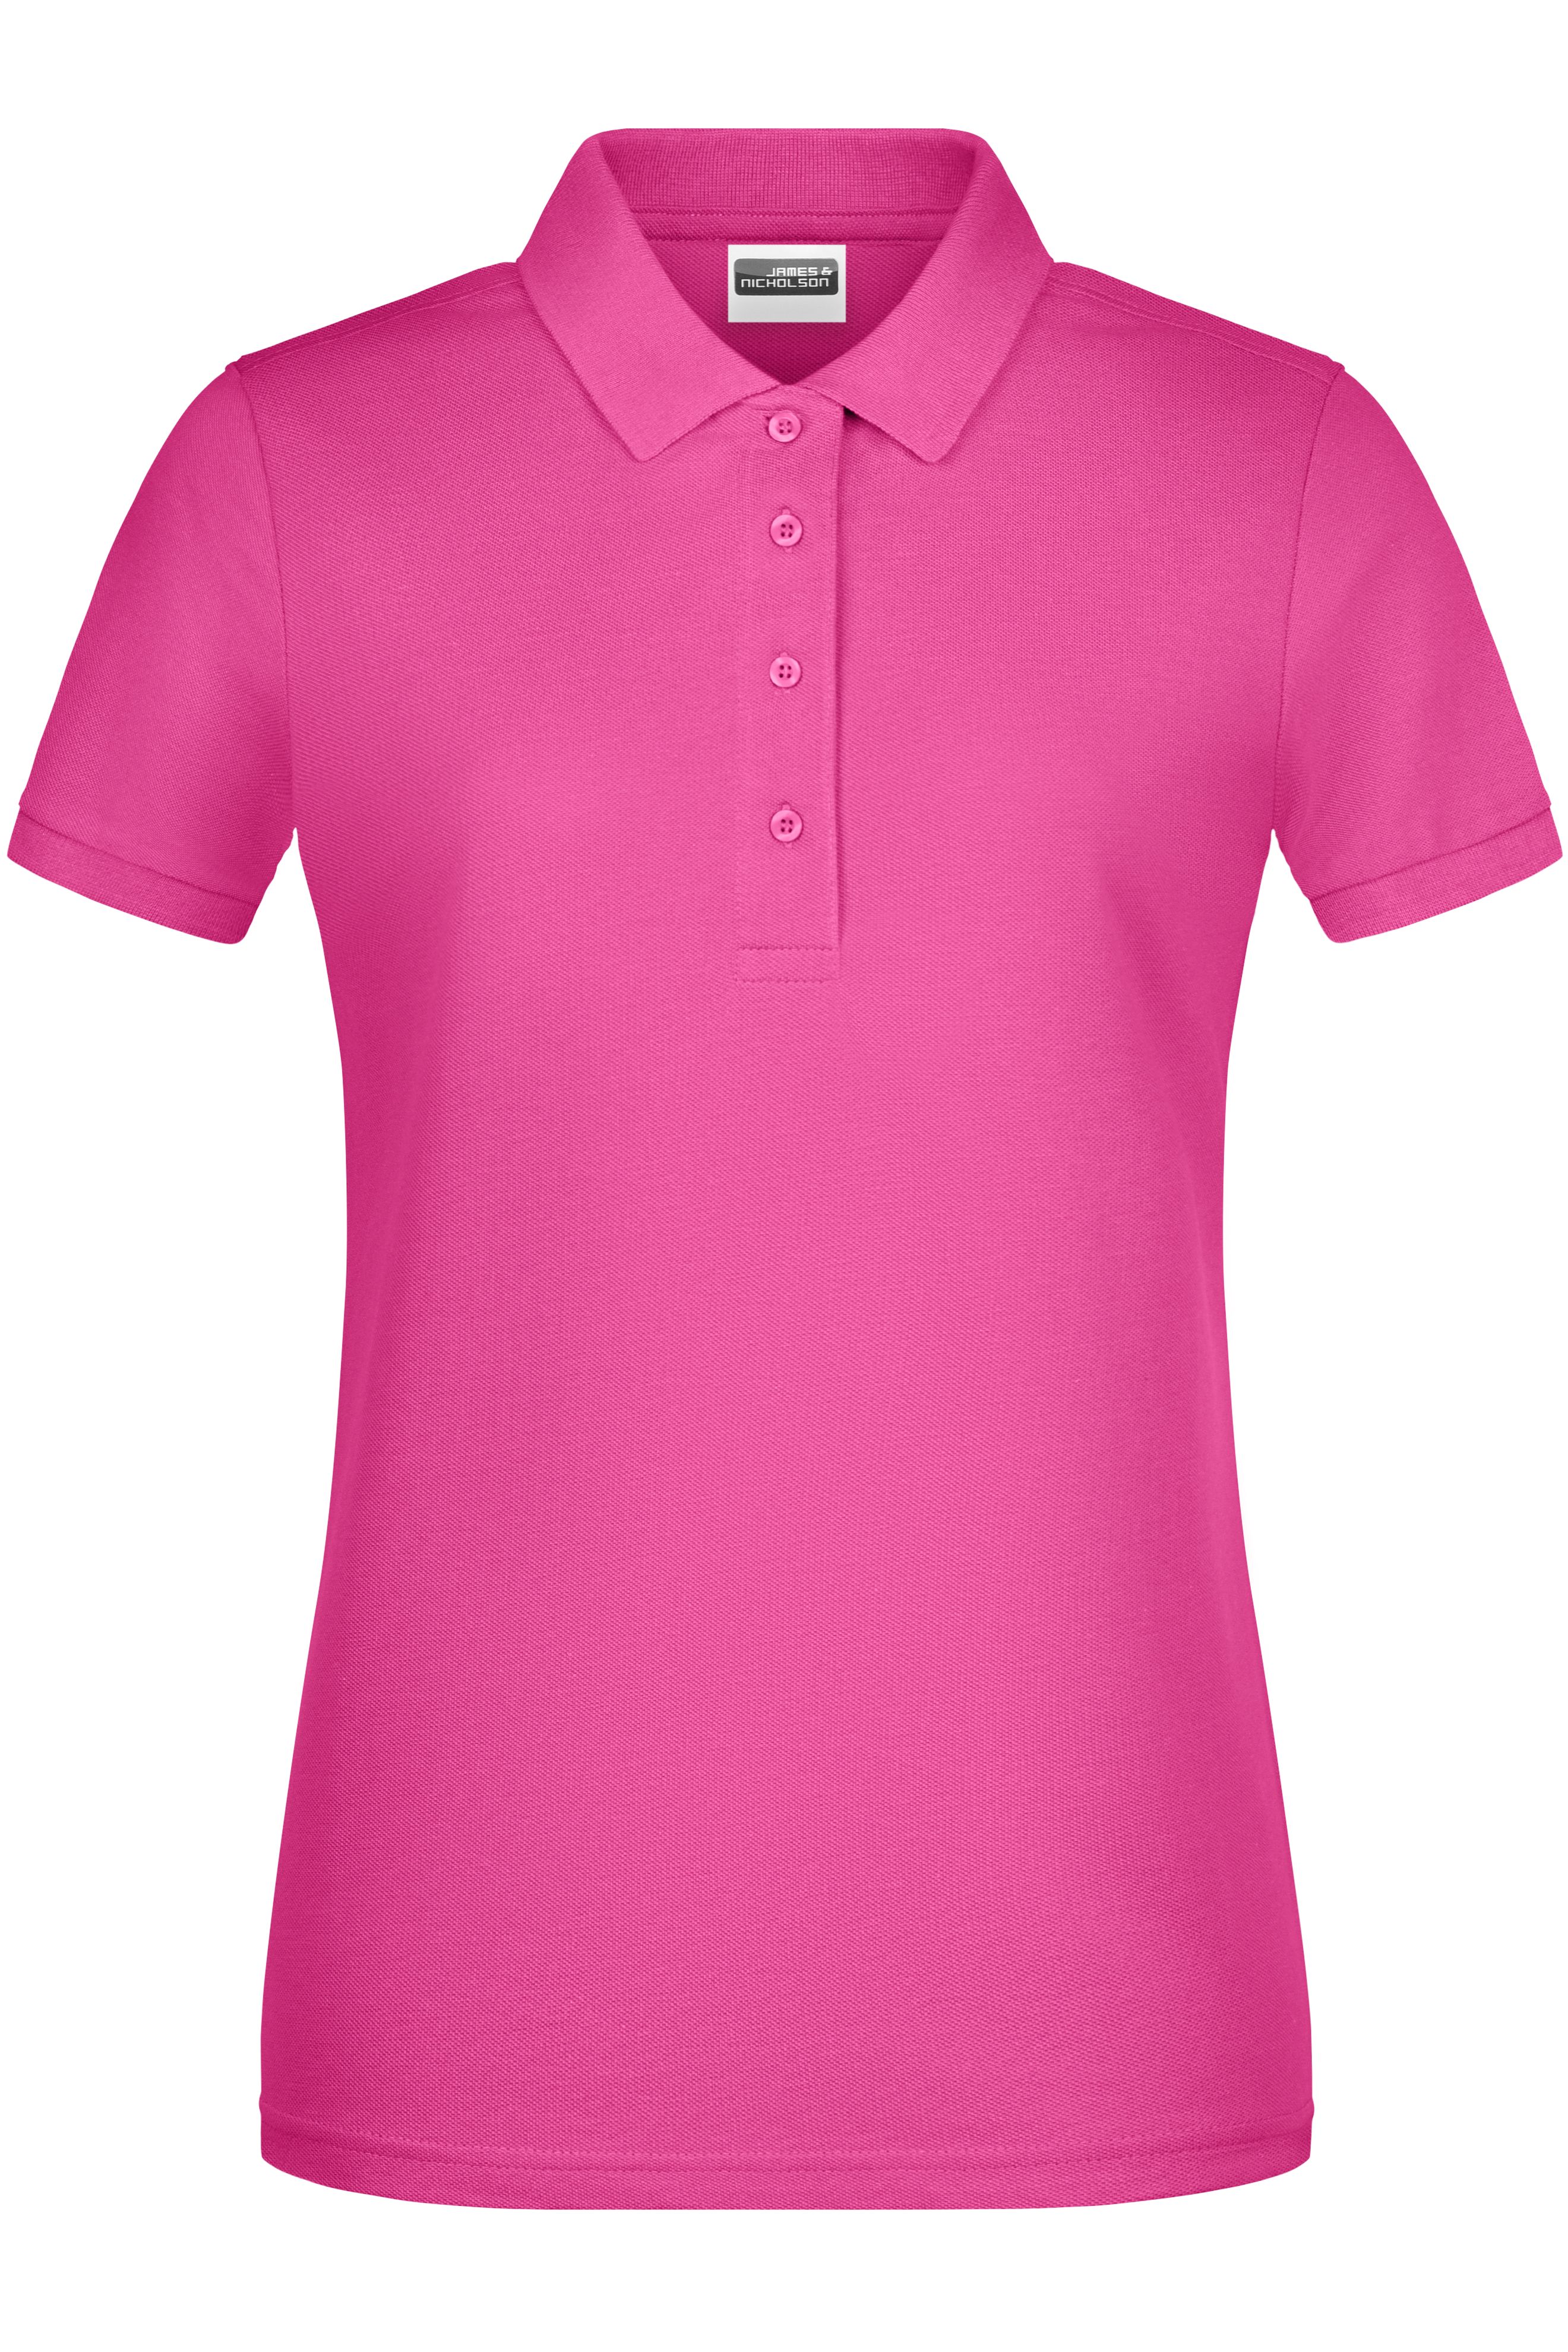 Ladies Ladies' Basic Polo Pink-Daiber